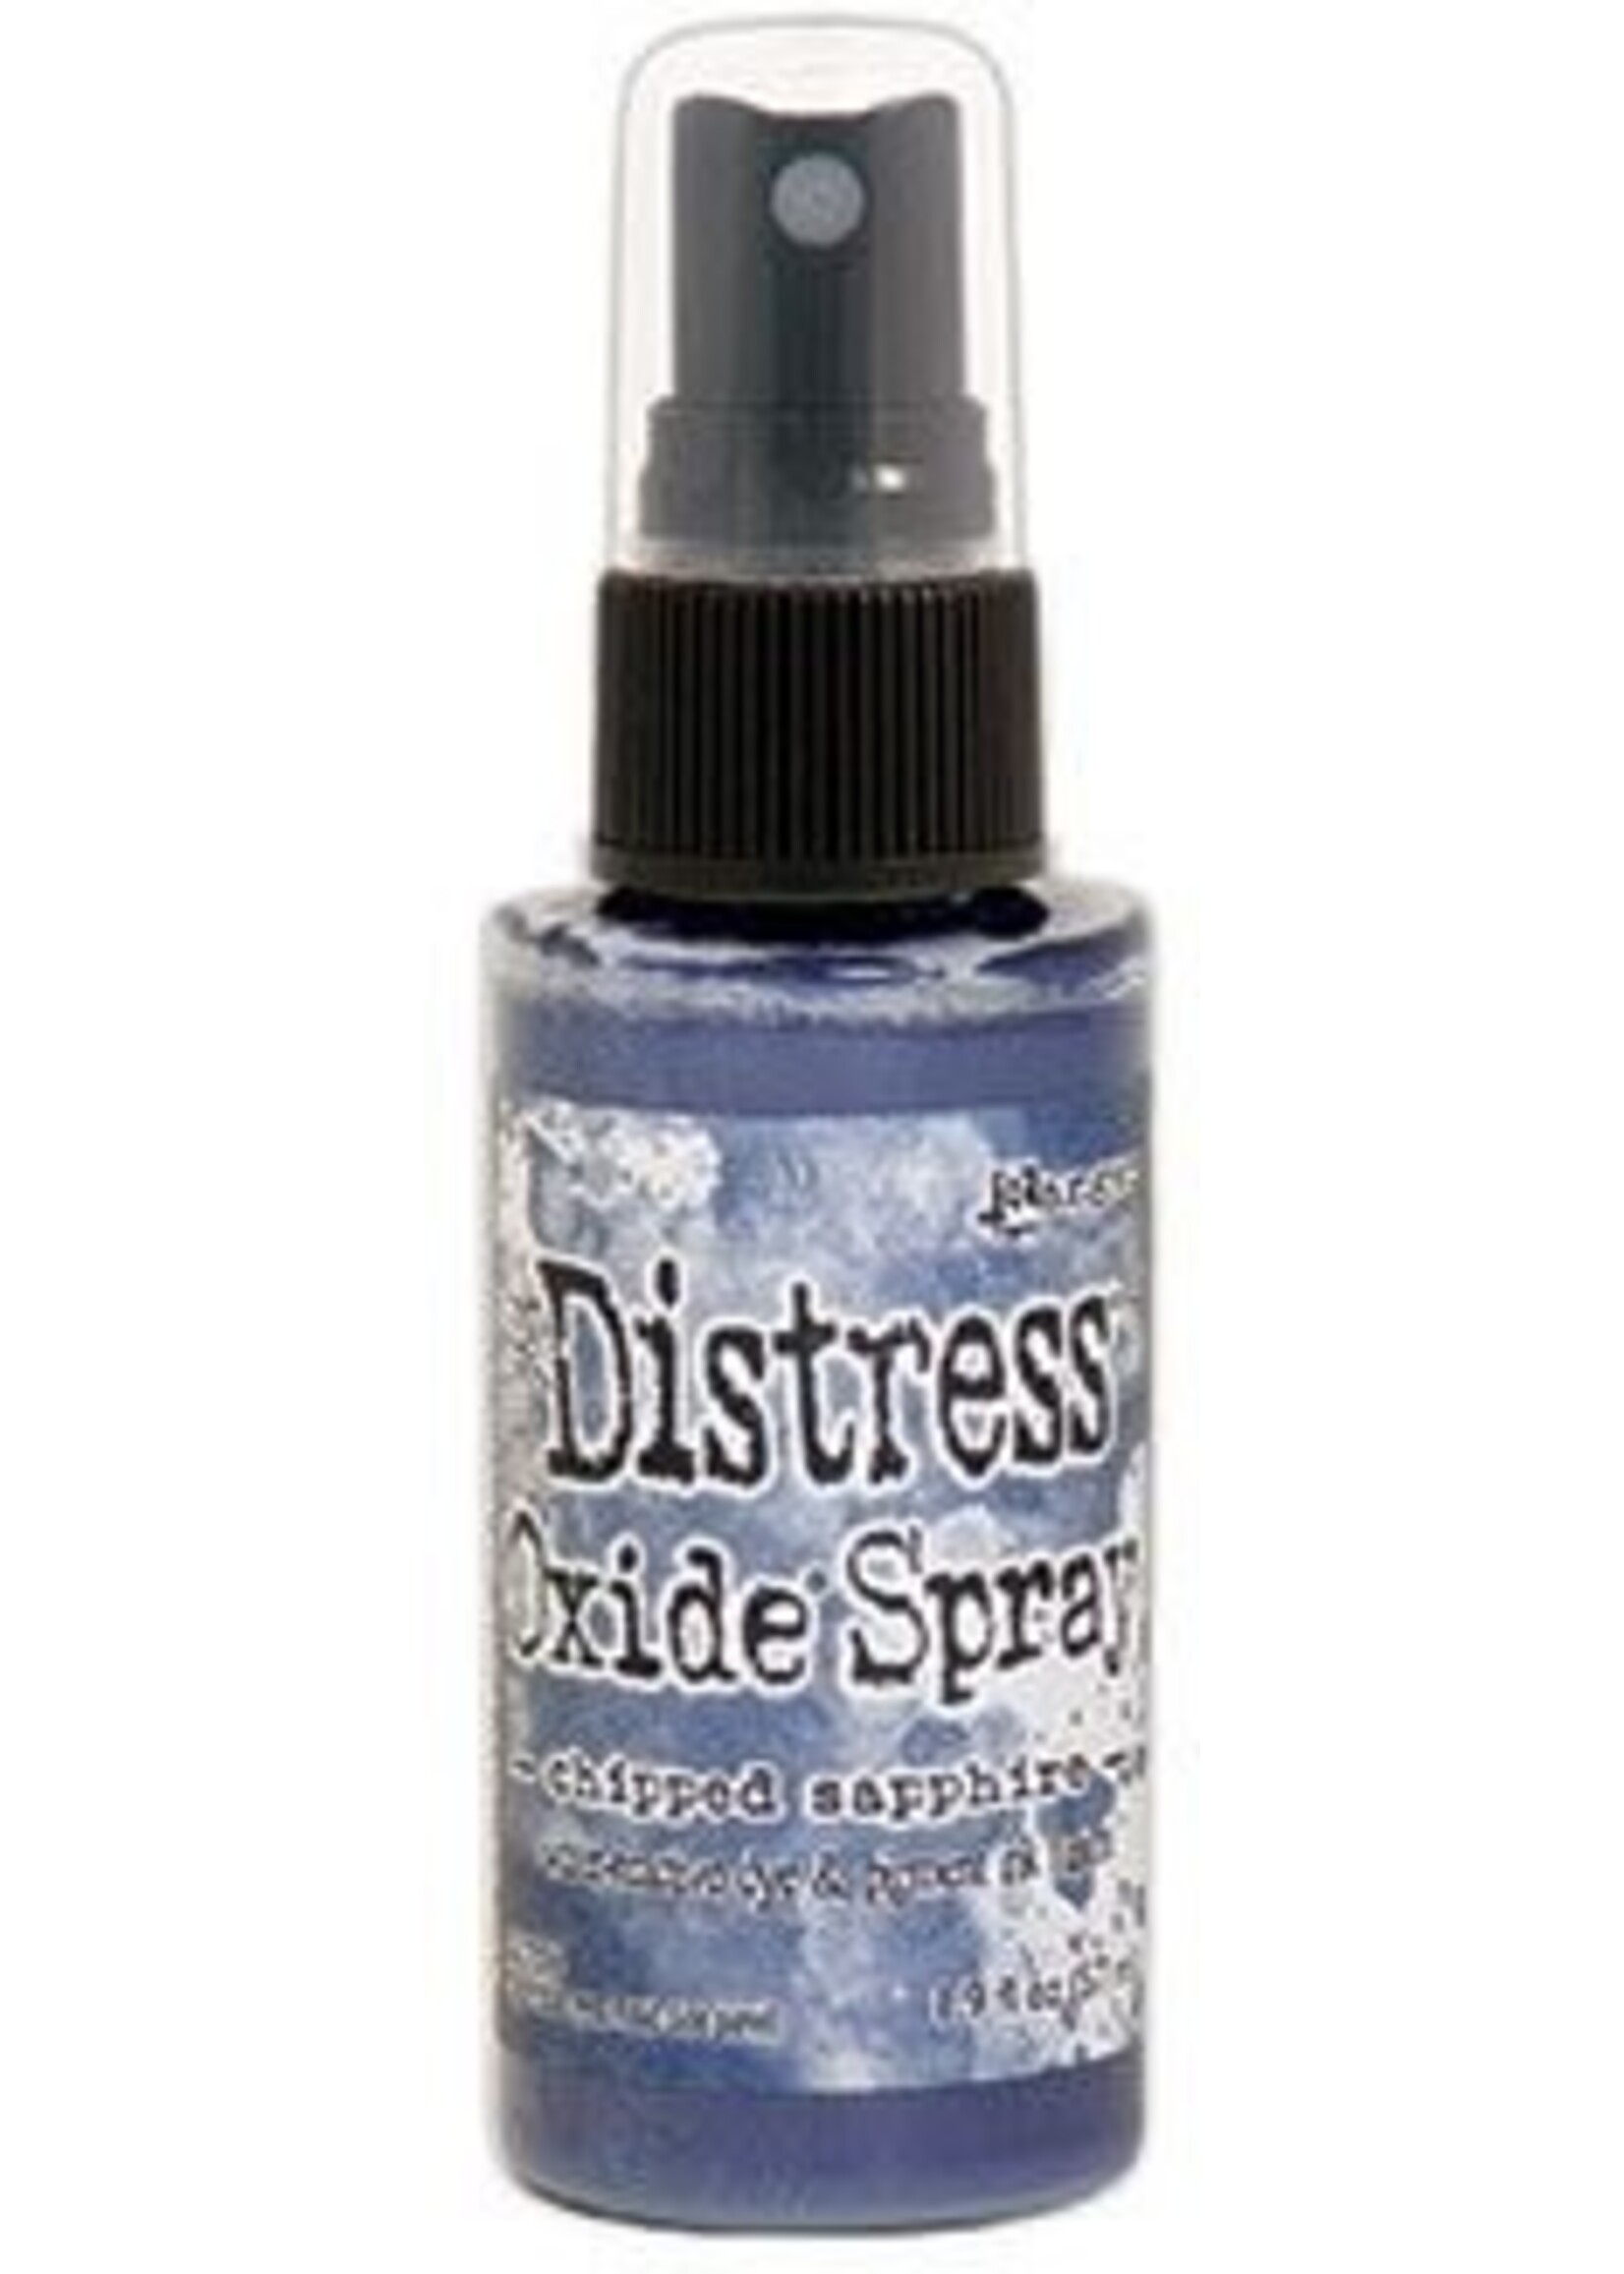 Ranger Tim Holtz Distress Oxide Spray, Chipped Sapphire